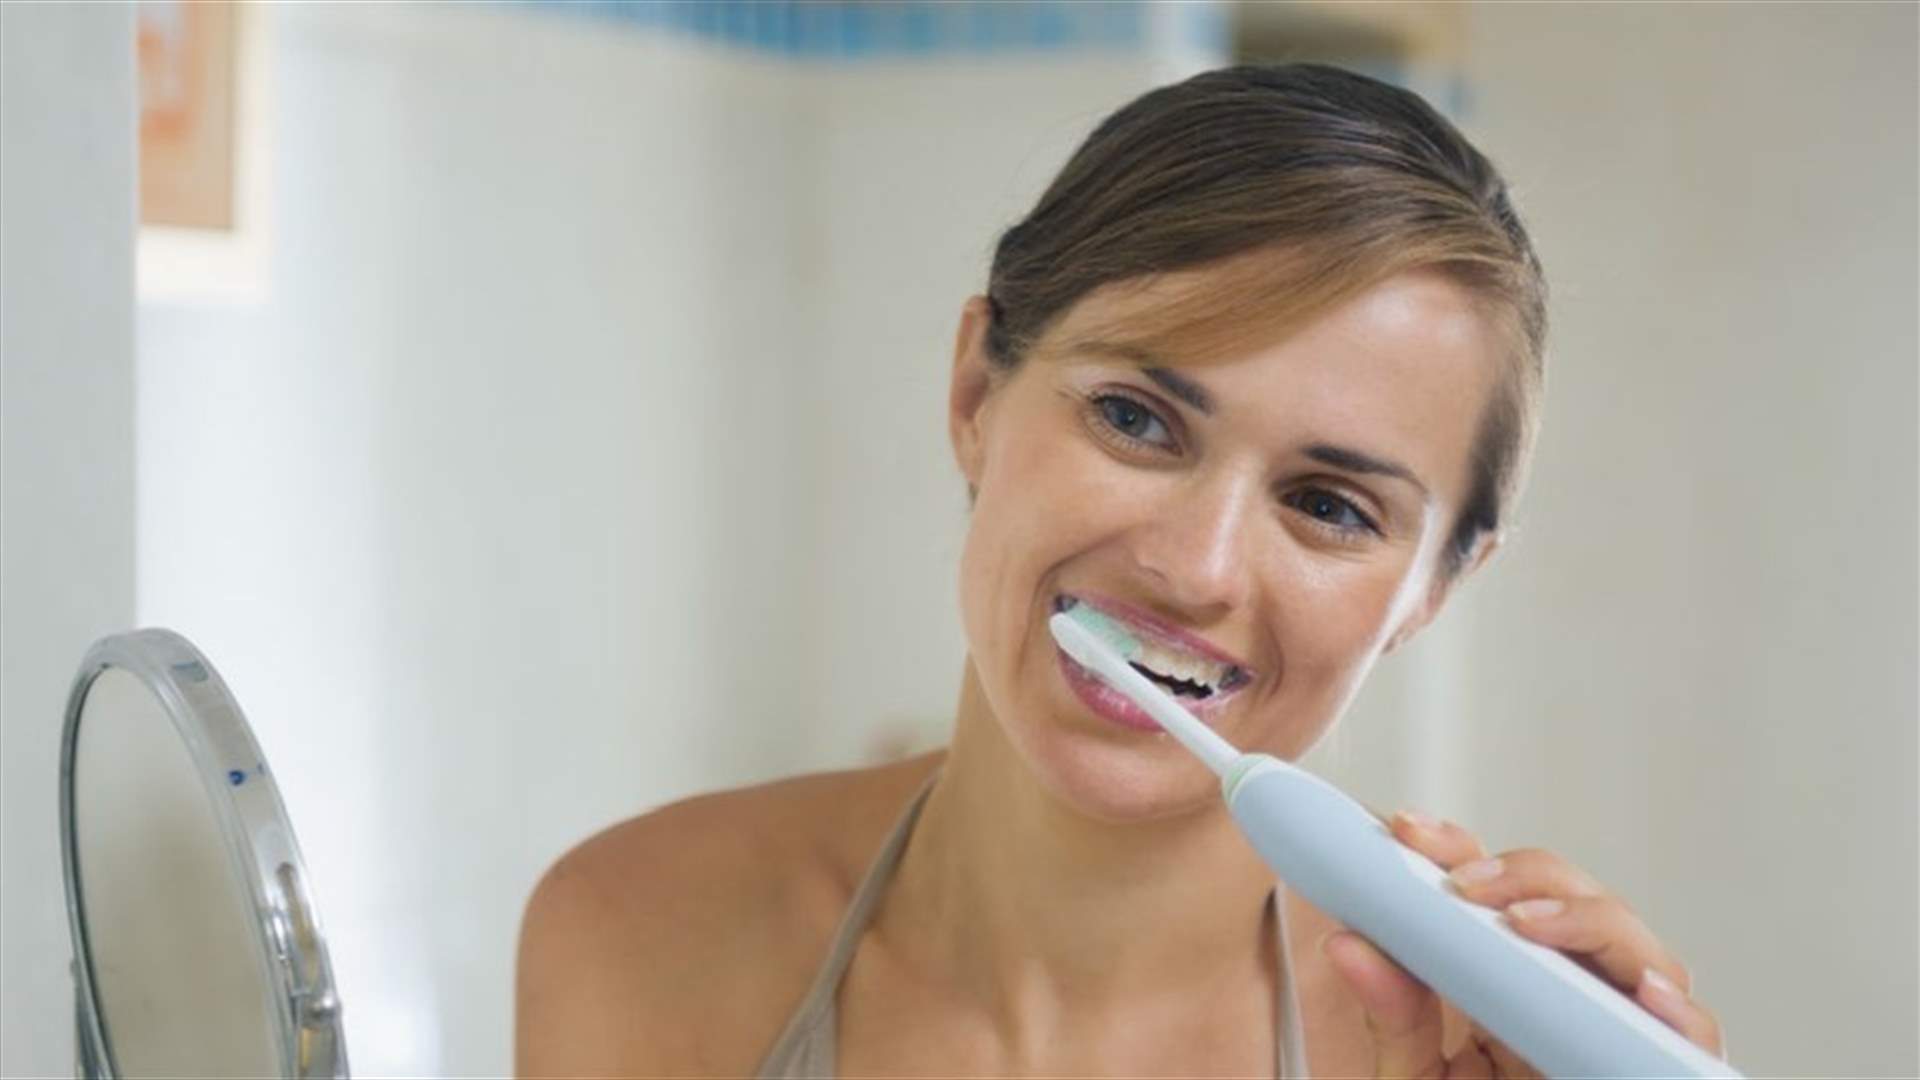 بعد التعافي من كورونا ... هل يجب التخلص من فرشاة الأسنان؟